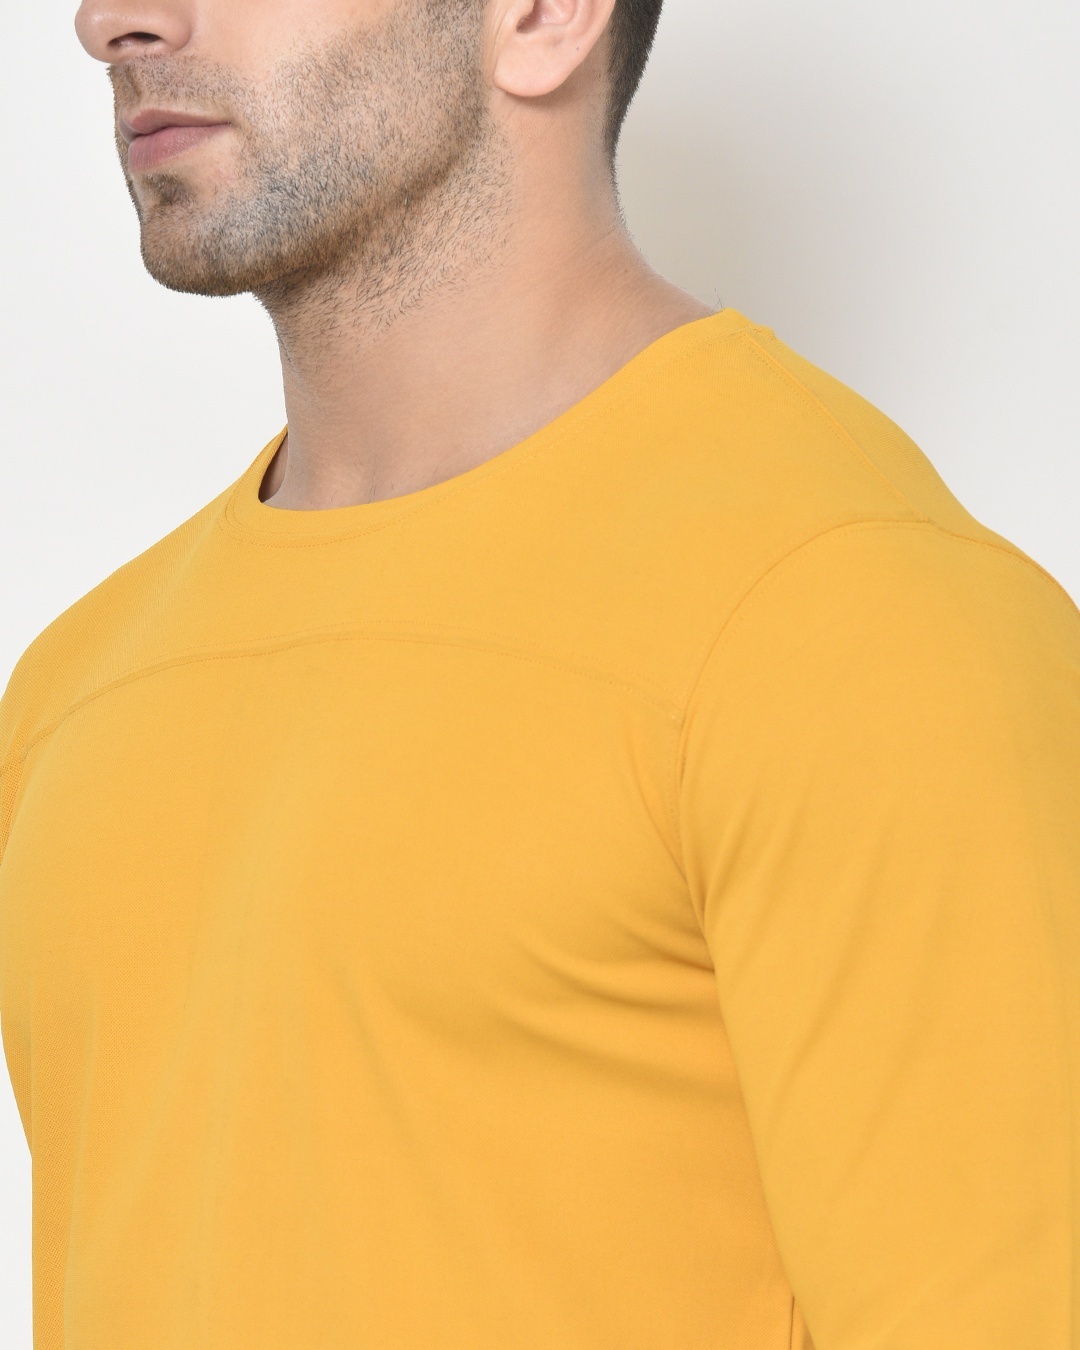 Shop Men's Yellow Casual T-shirt